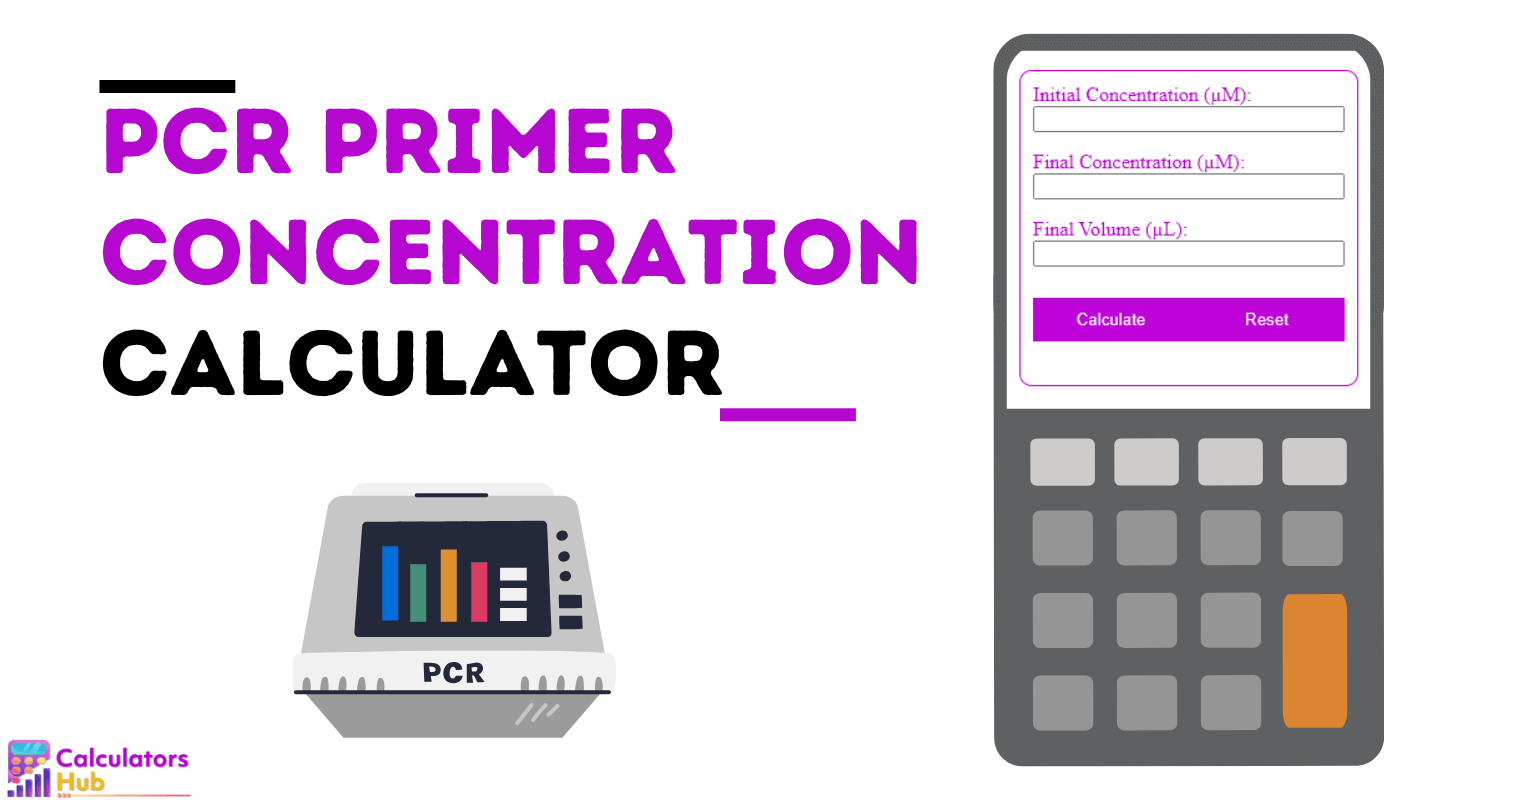 Calculadora de concentração de primer PCR